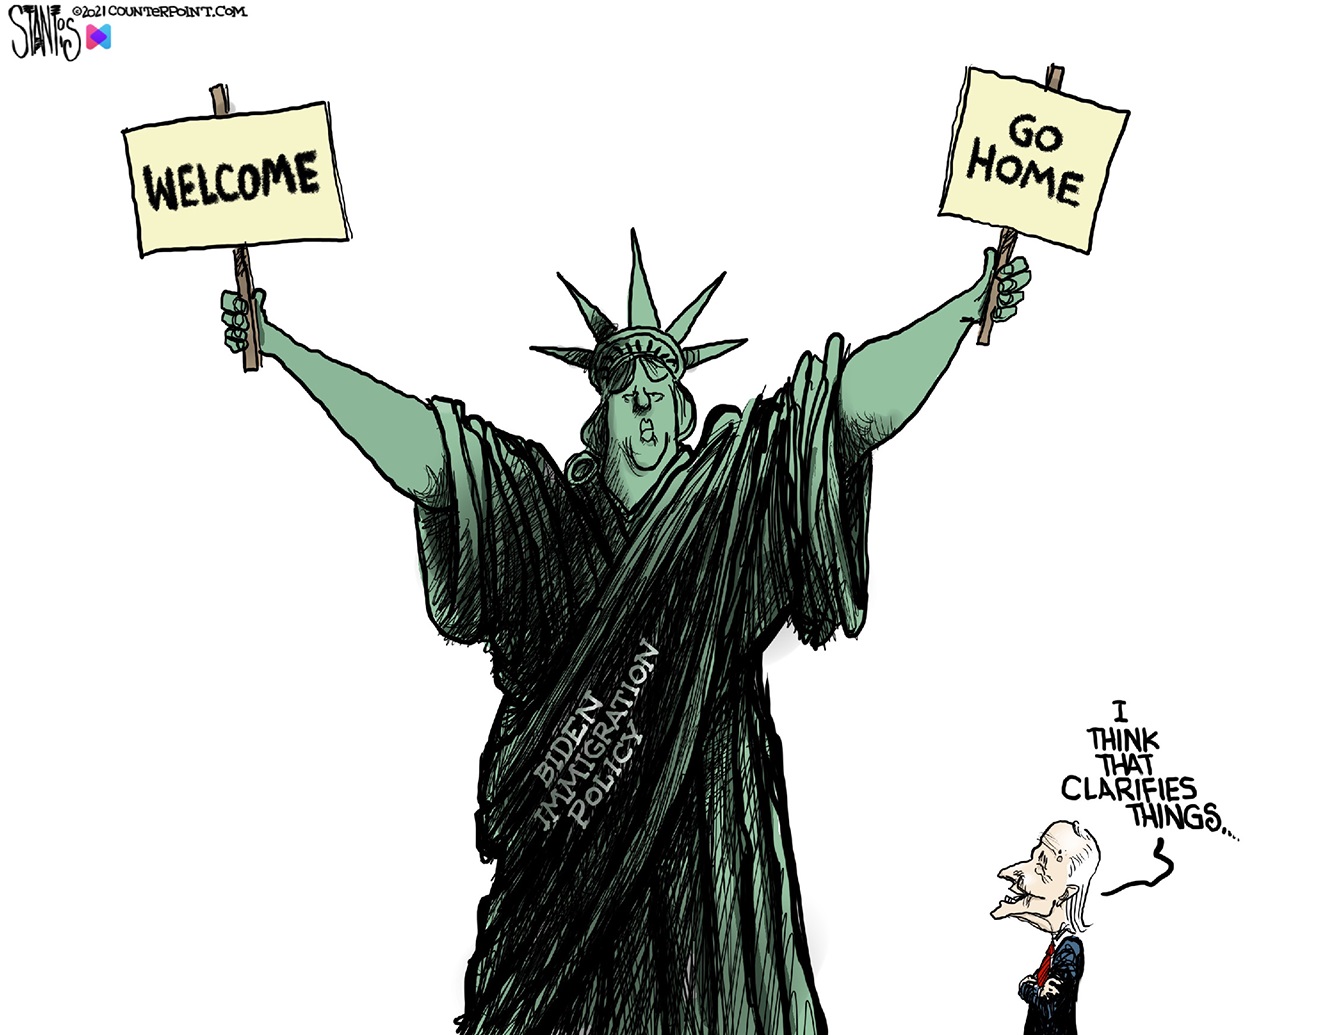 recent political cartoons 2022 immigration